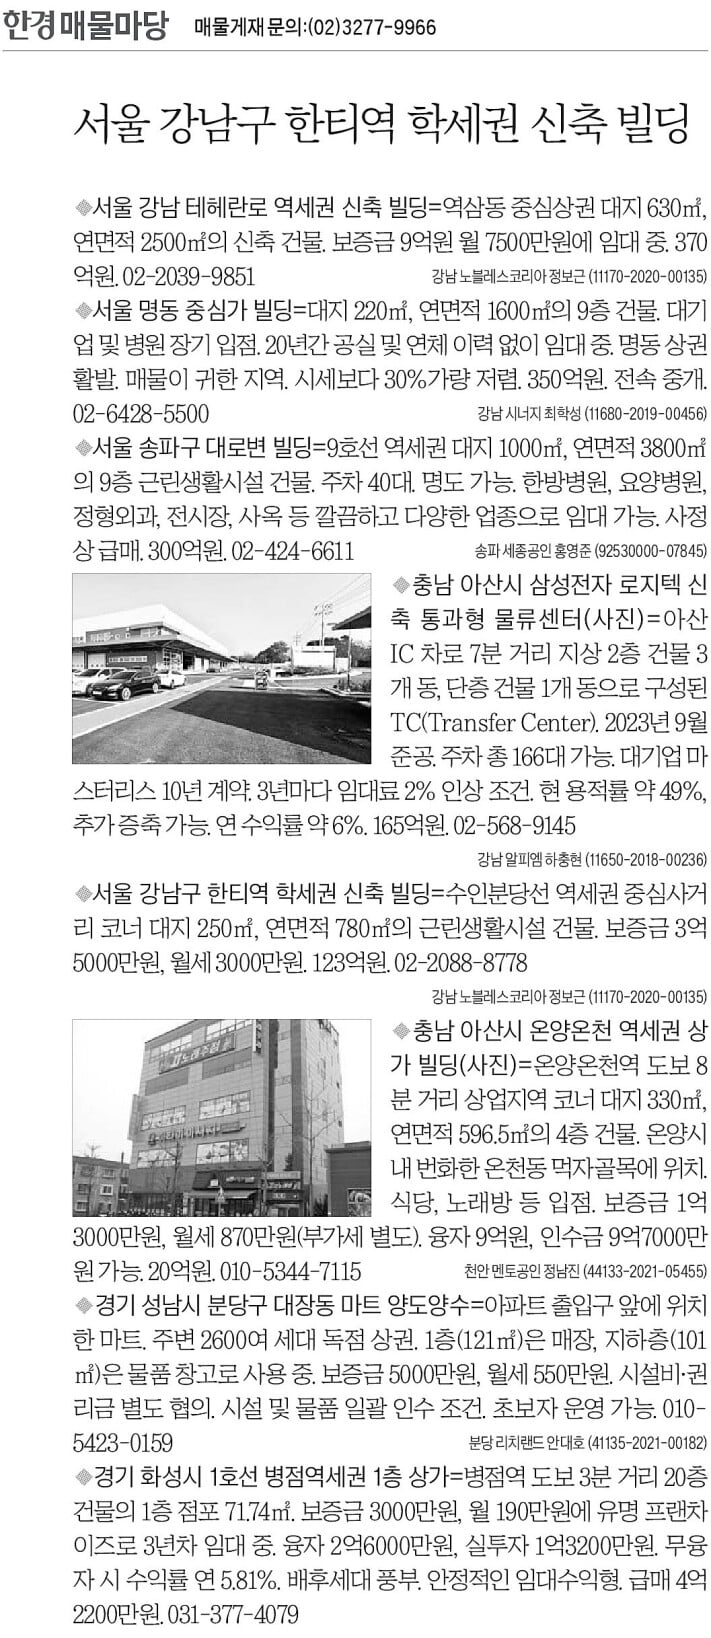 [한경 매물마당] 강남구 한티역 학세권 신축 빌딩 등 8건